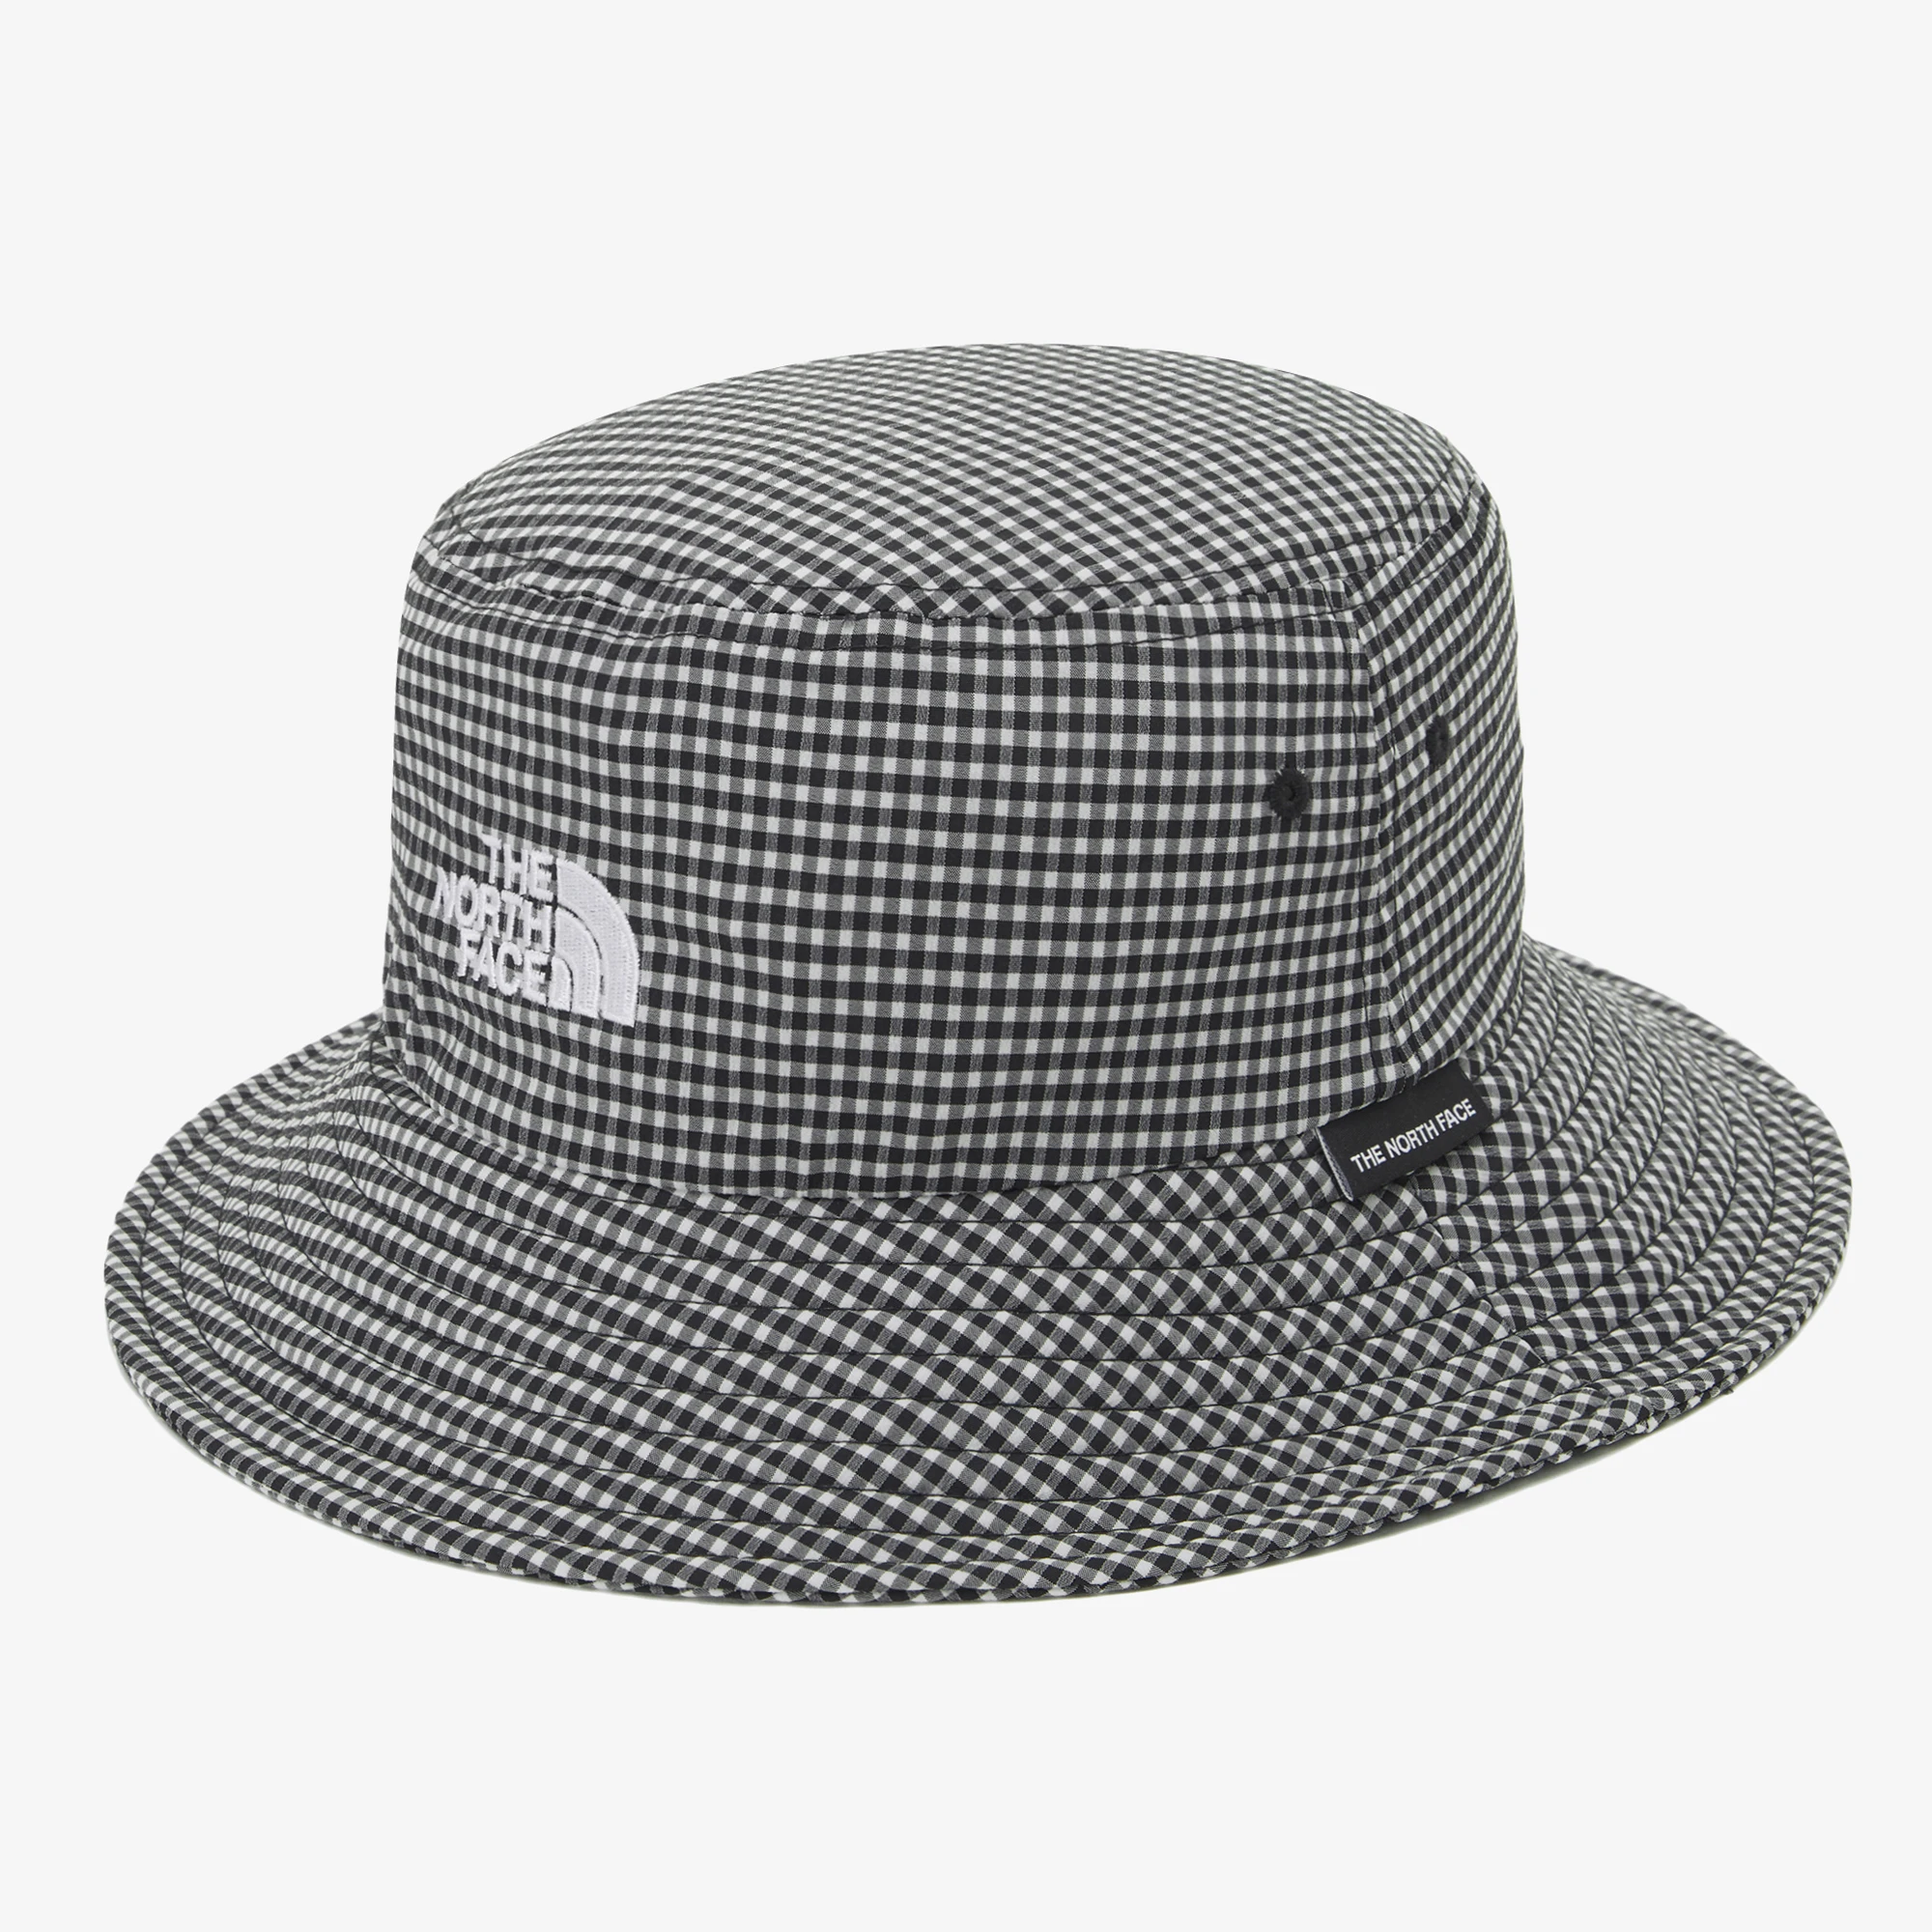 推荐【Brilliant|北面特惠】北面生态渔夫帽 ECO BUCKET HAT BLACK_FOREST NE3HP12C商品